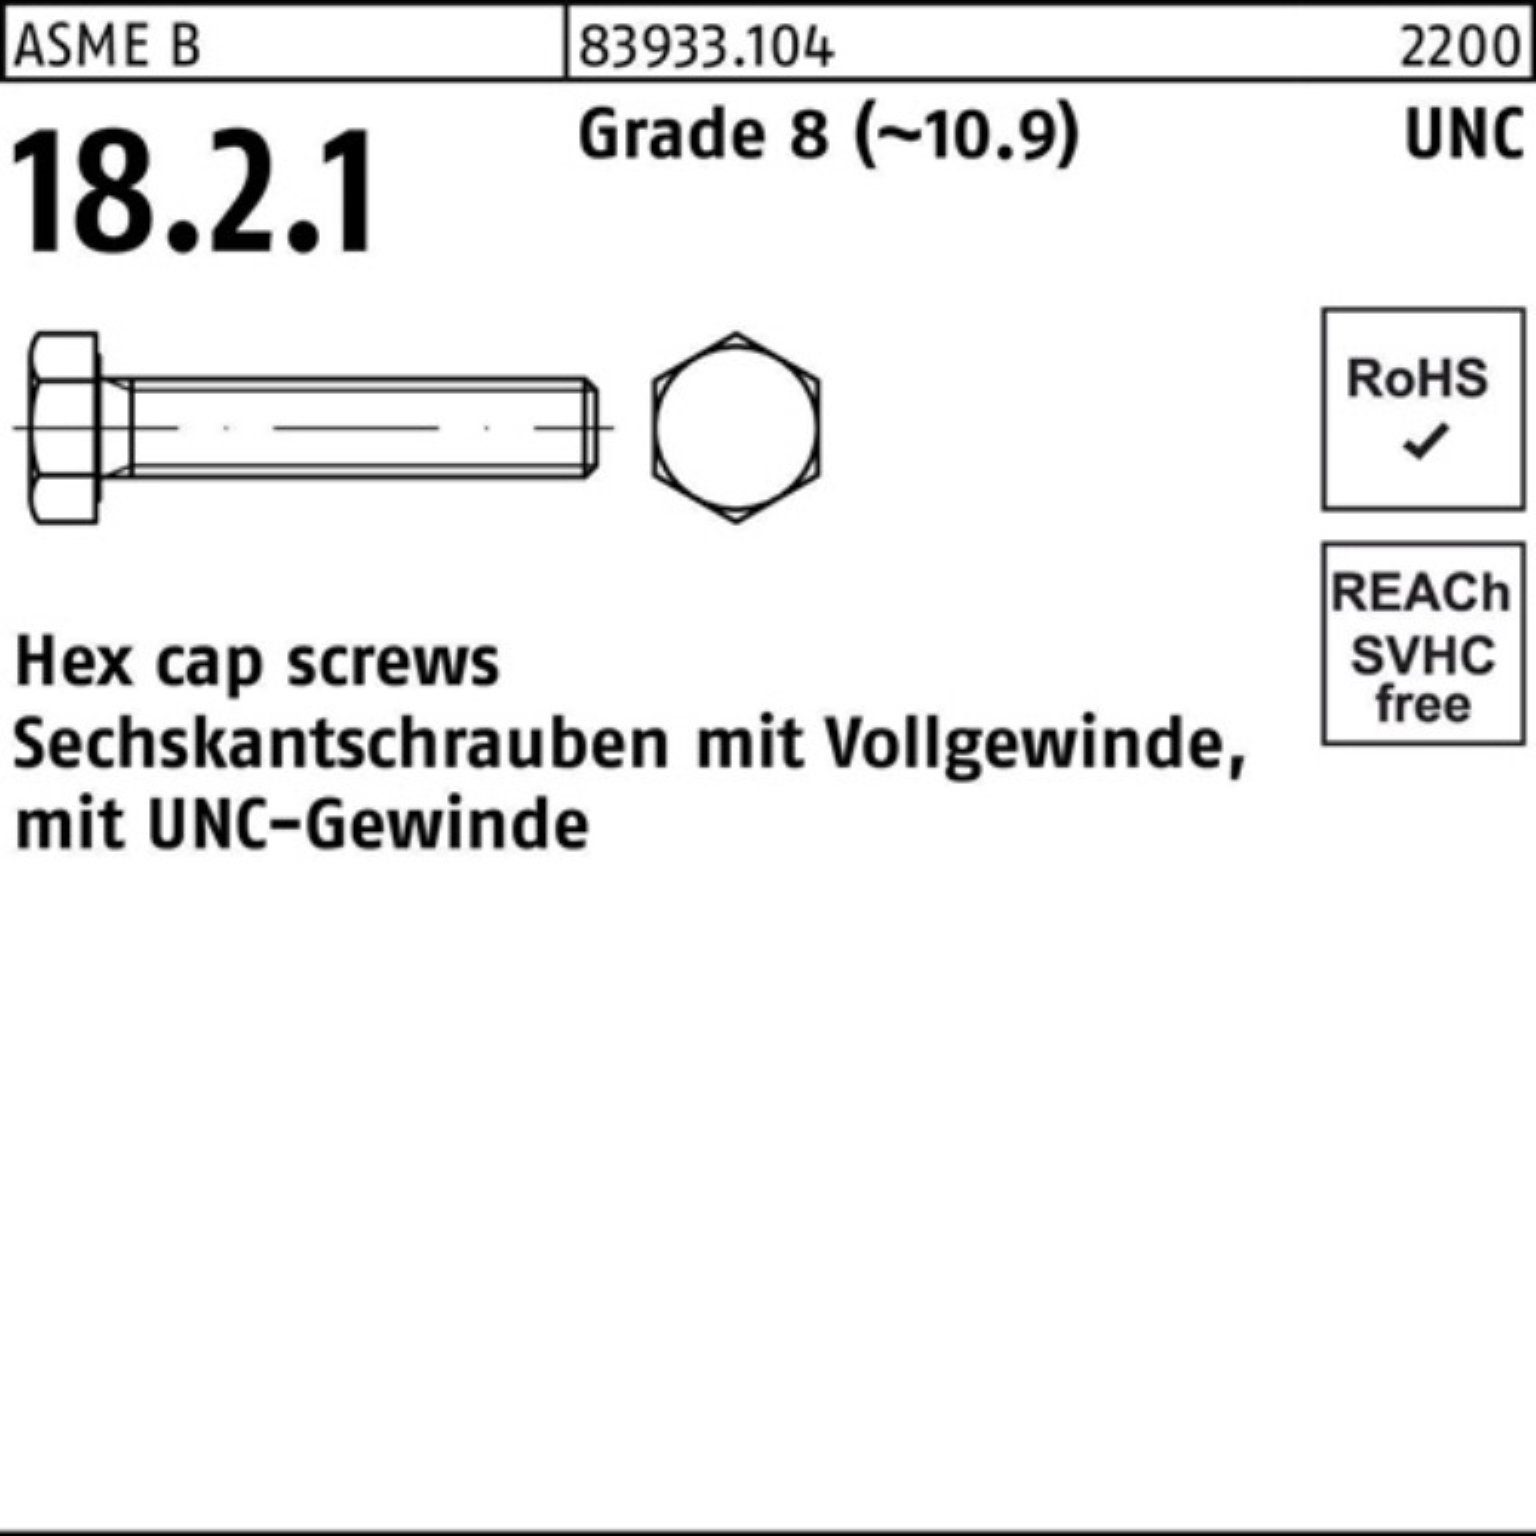 Reyher Sechskantschraube 100er Pack Sechskantschraube R 83933 UNC-Gewinde VG 1/4x 7/8 Grade 8